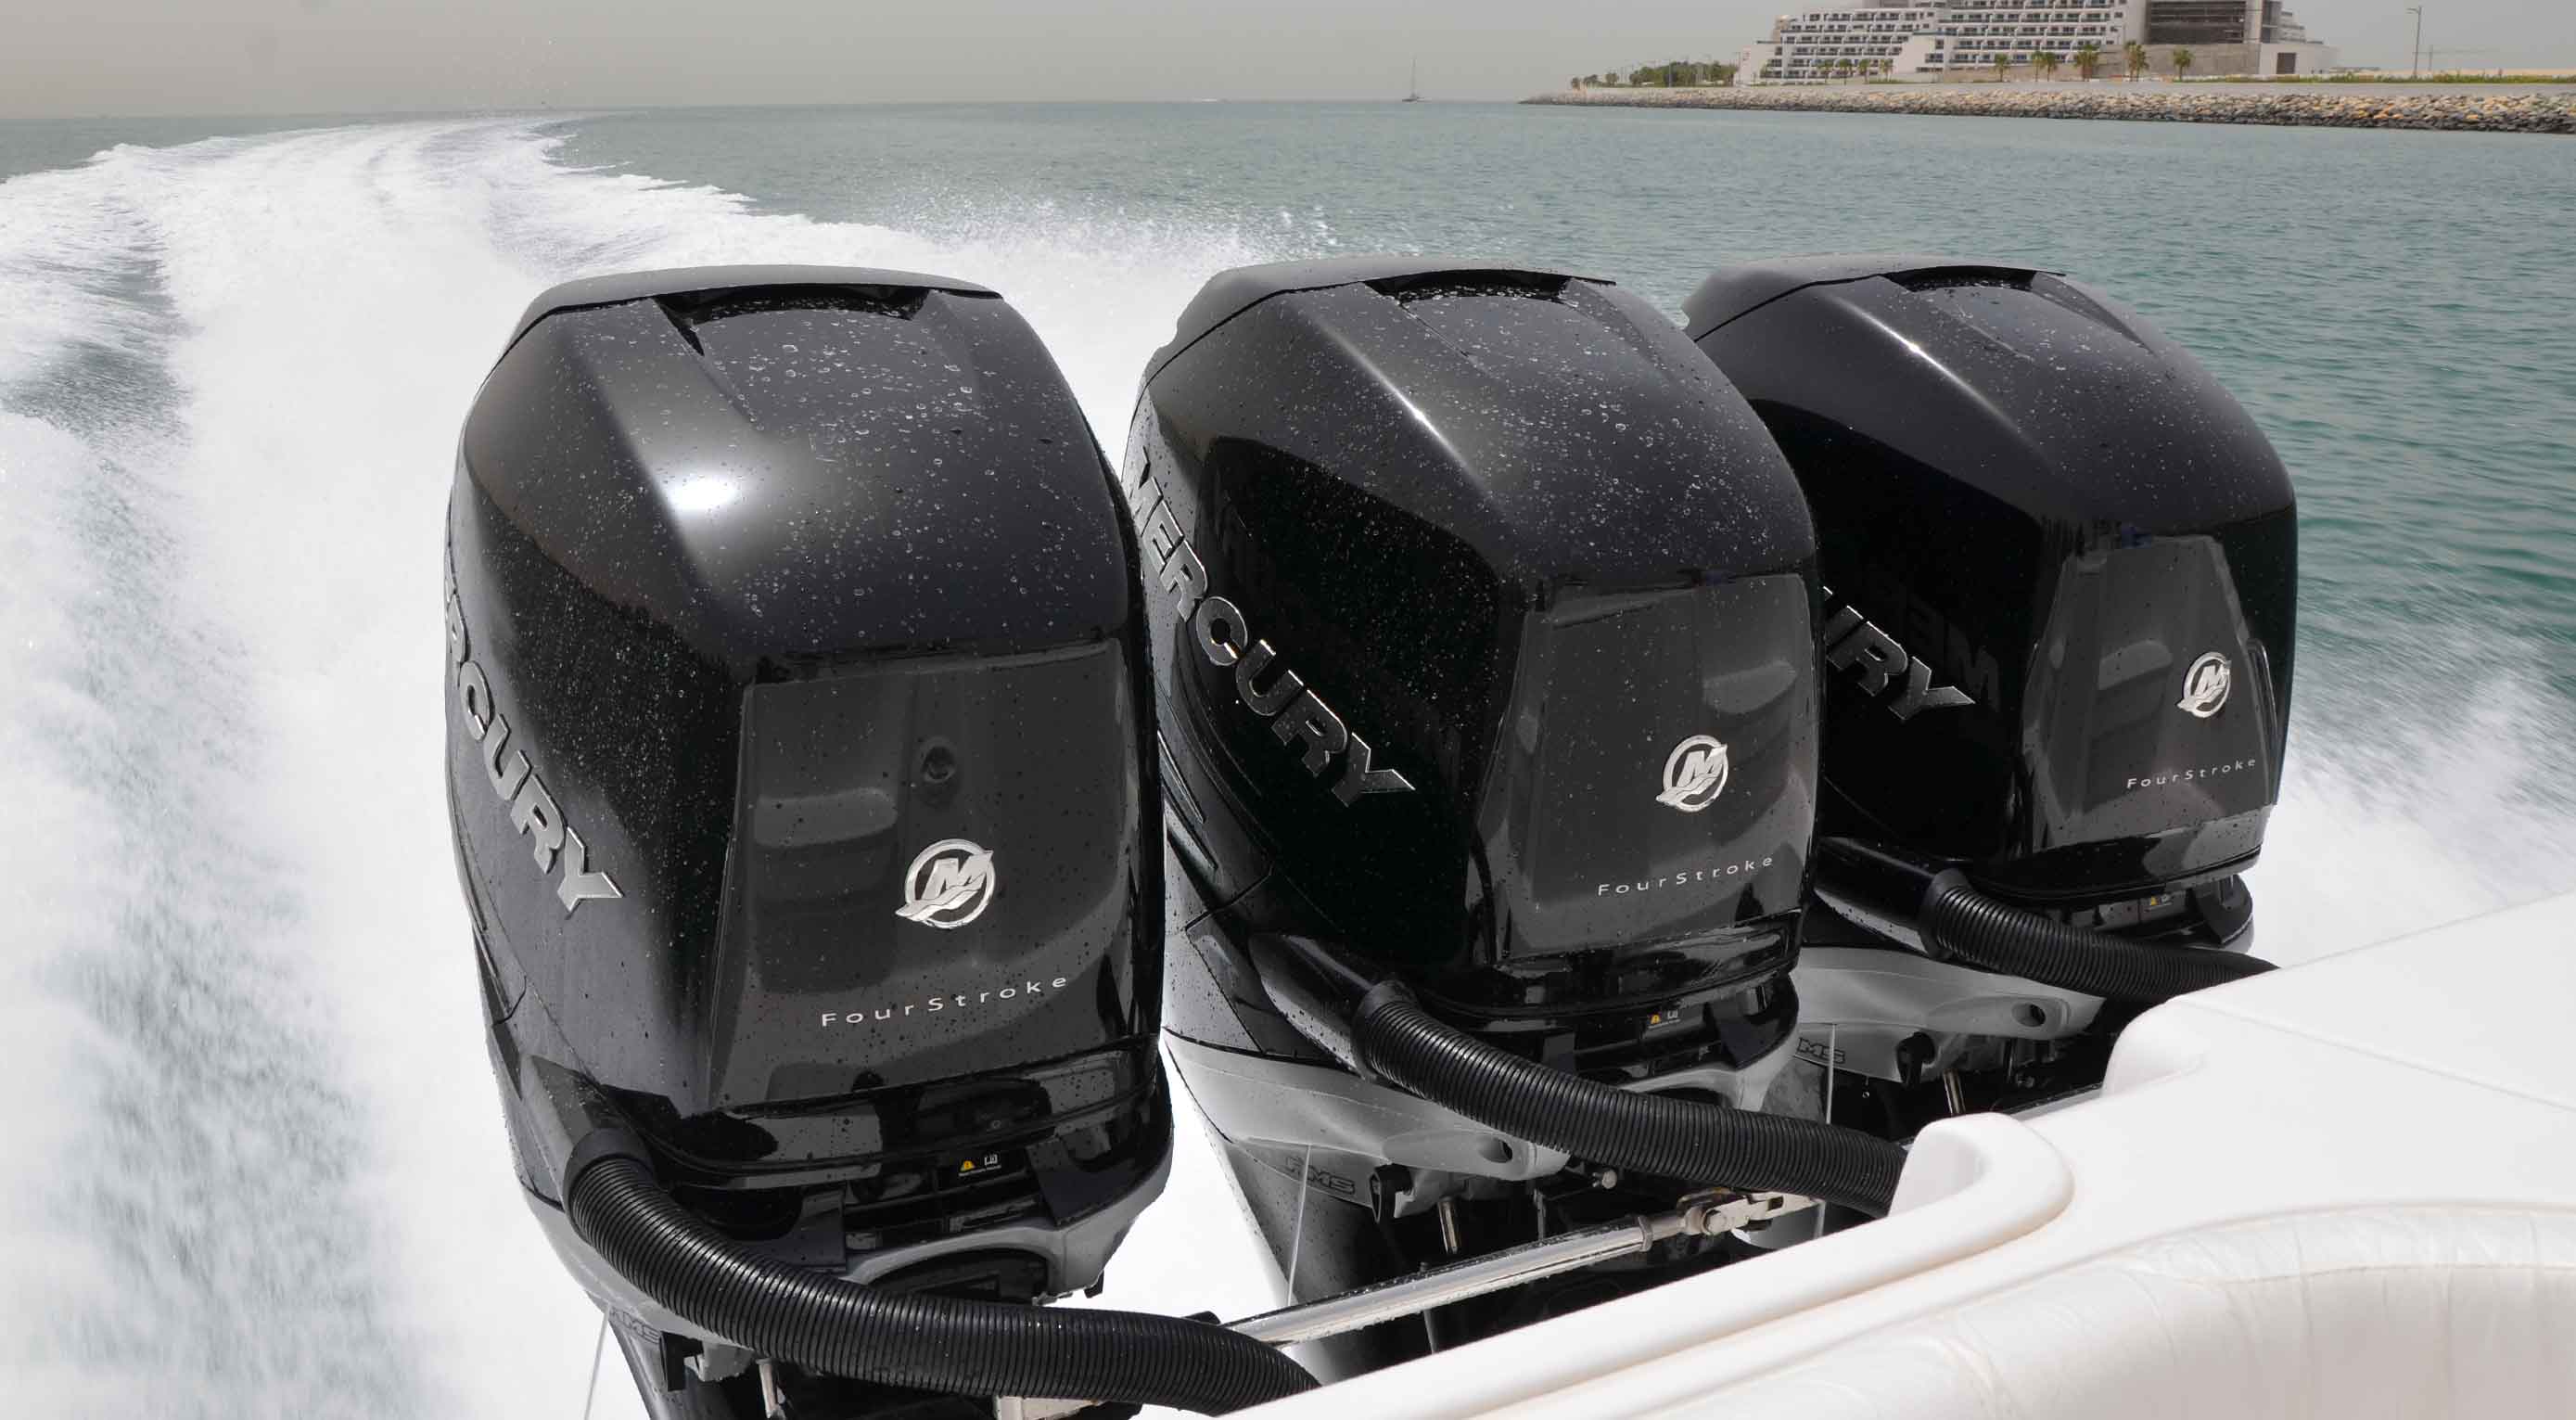 Test in Dubai dei nuovi Mercury Verado 350 con l’IMG Boats 400XS